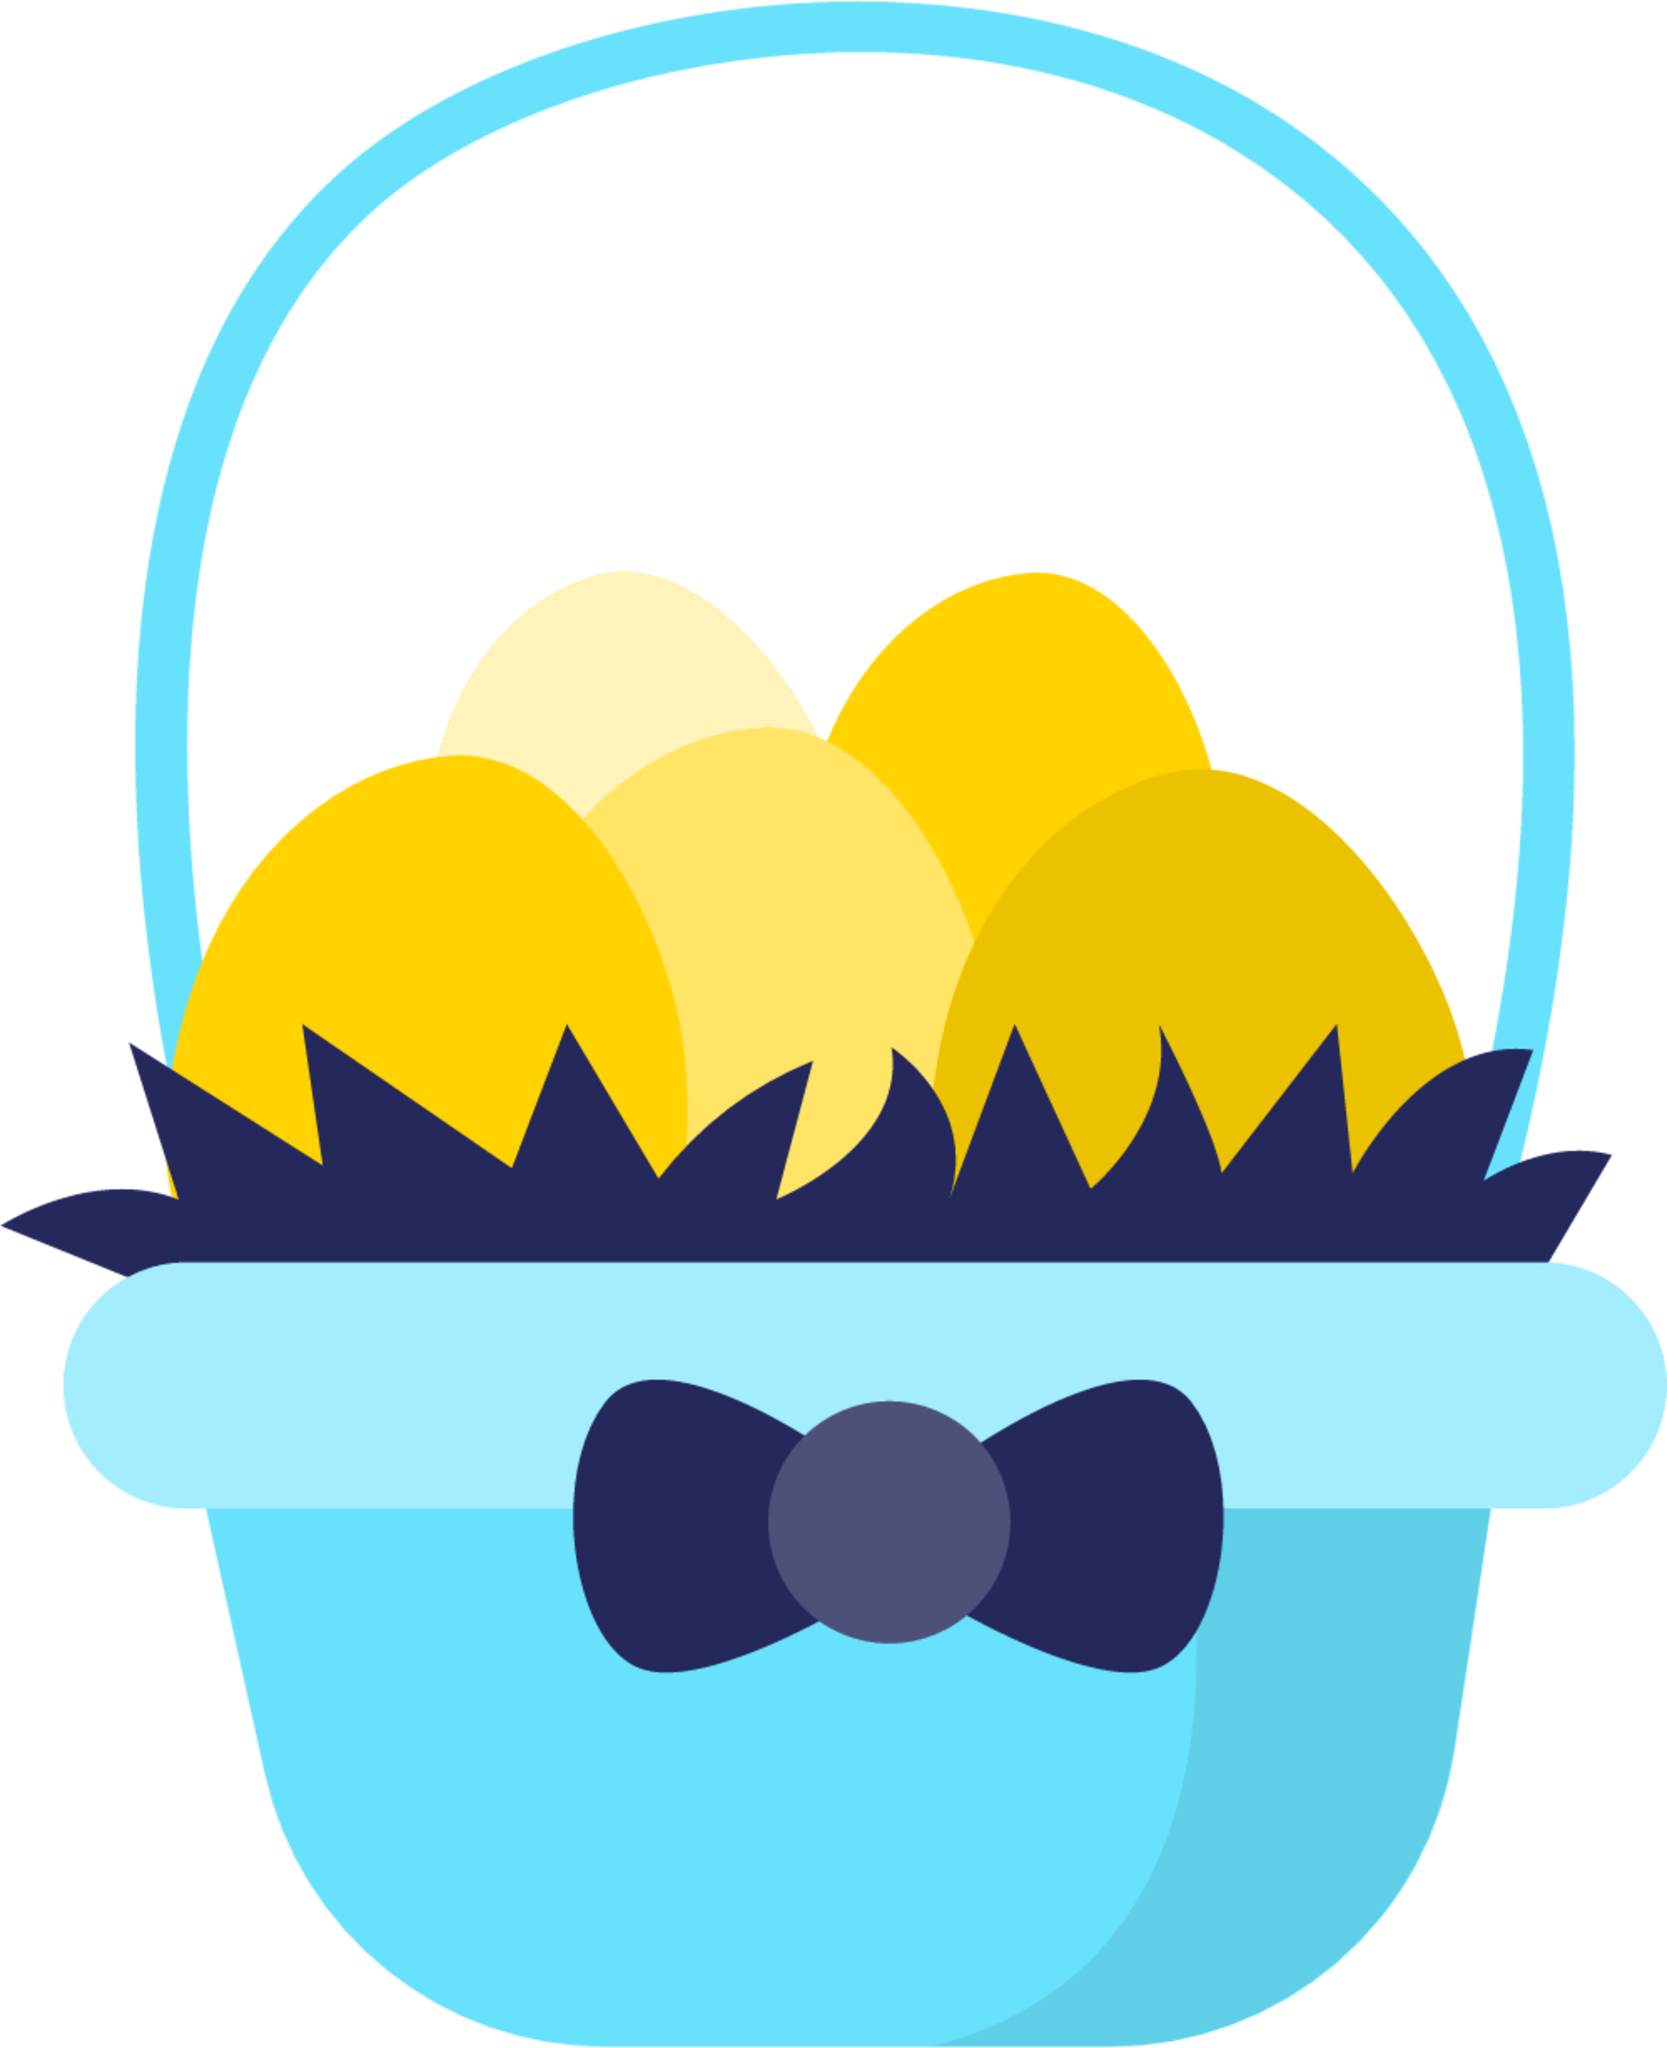 Easter basket illustration